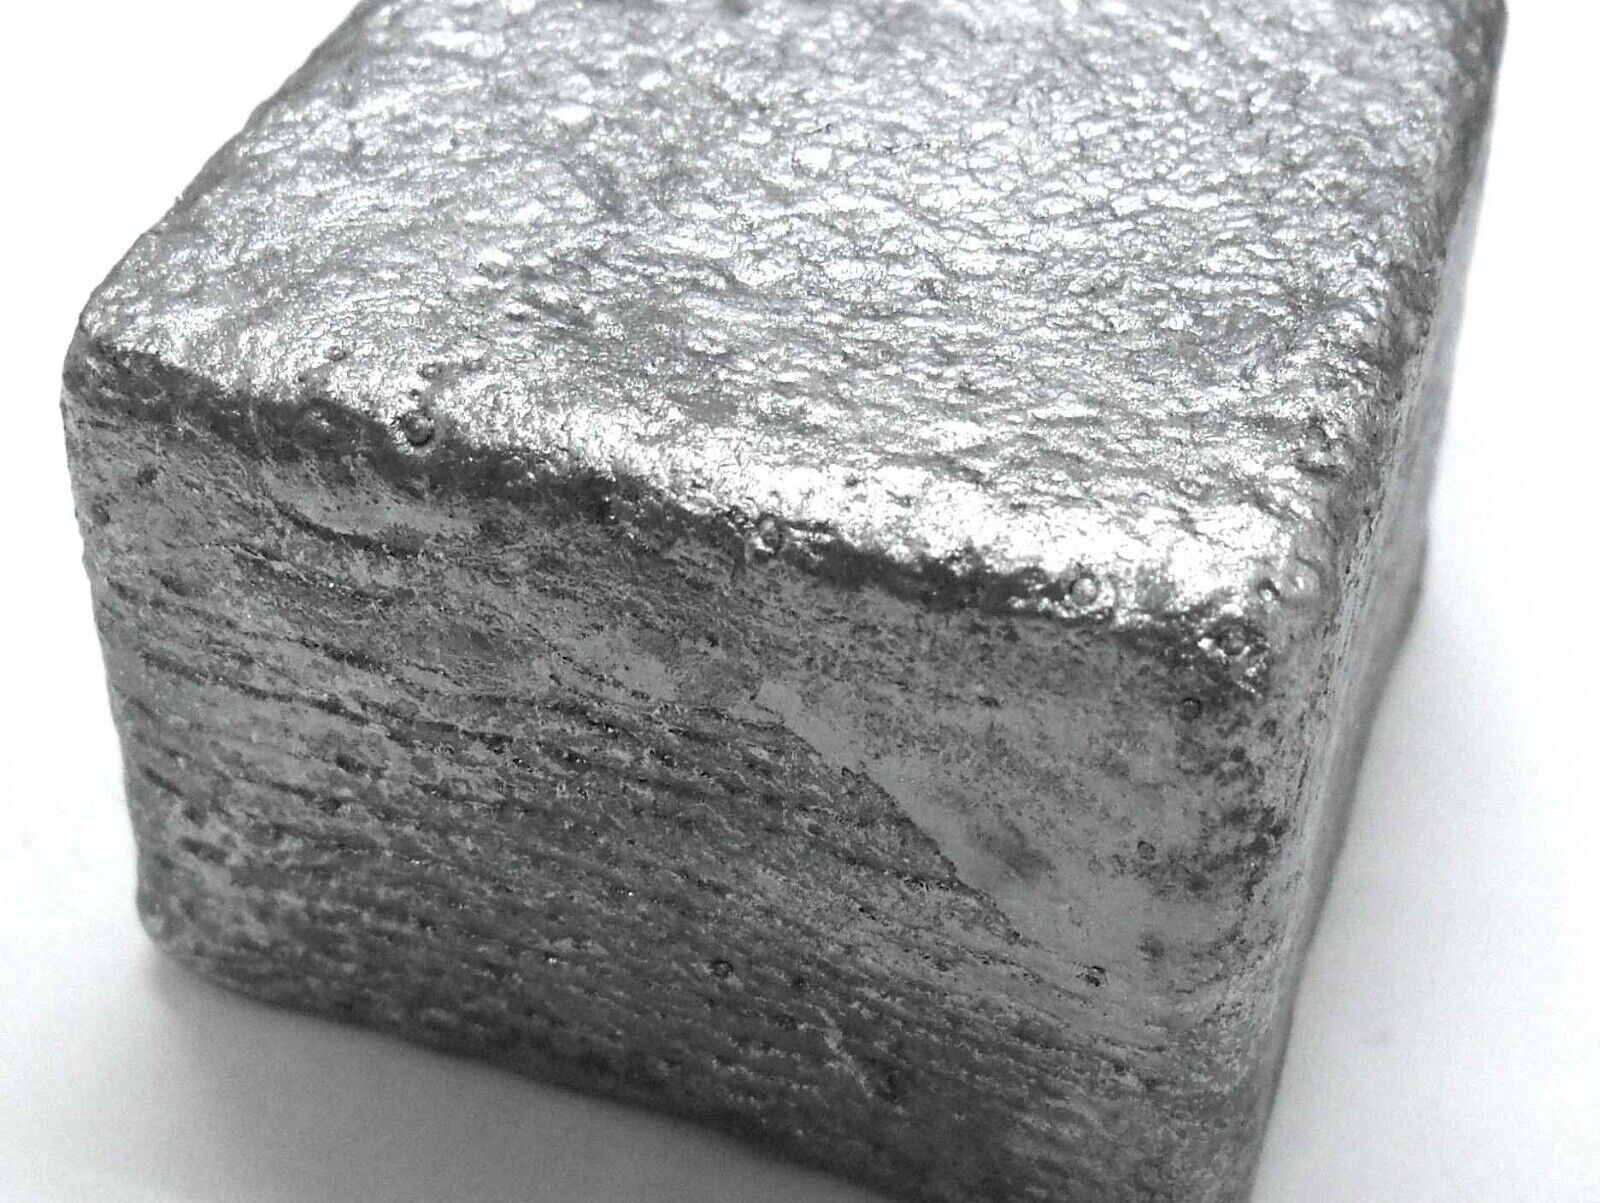 5kgs Tellurium Metal Ingot | 480-520g per ingot | 99.9% Pure | Element 52 